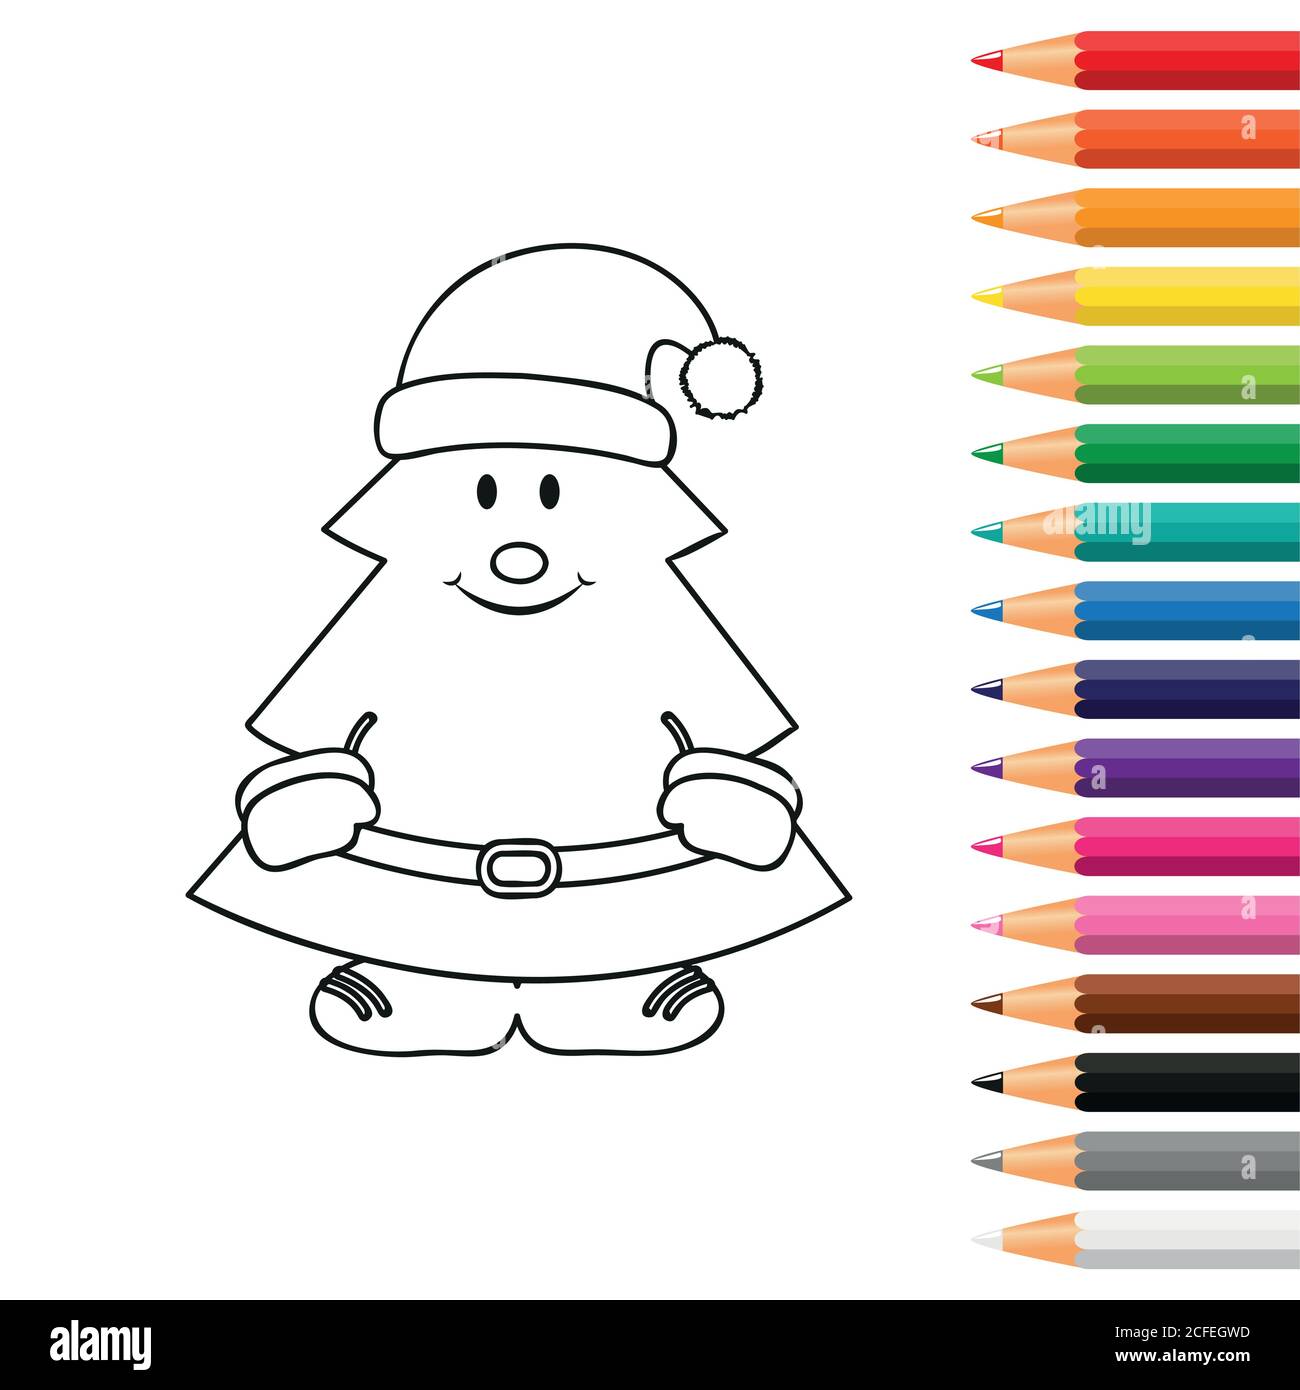 Christmas Drawings for Kids | Christmas drawings for kids, Christmas drawing,  Easy drawings for kids